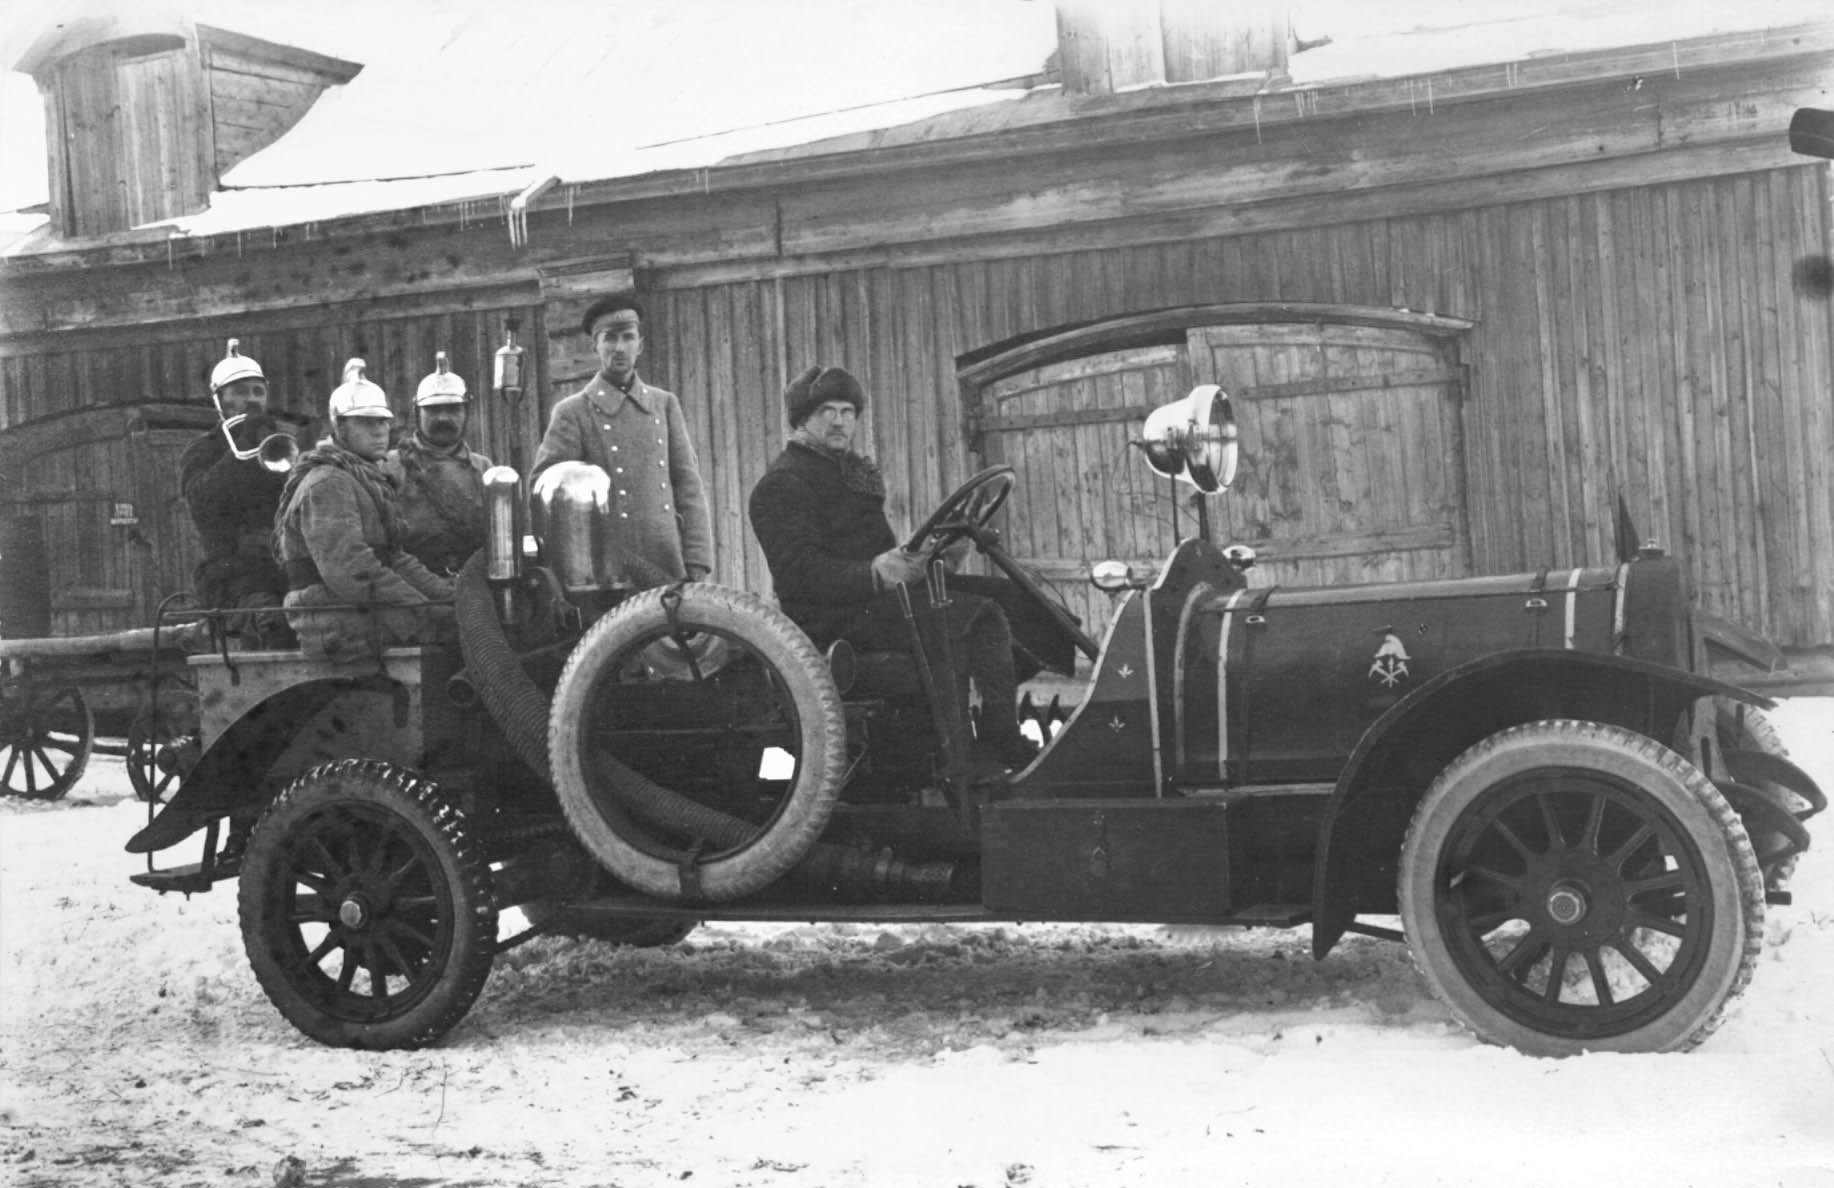 История пожарных автомобилей